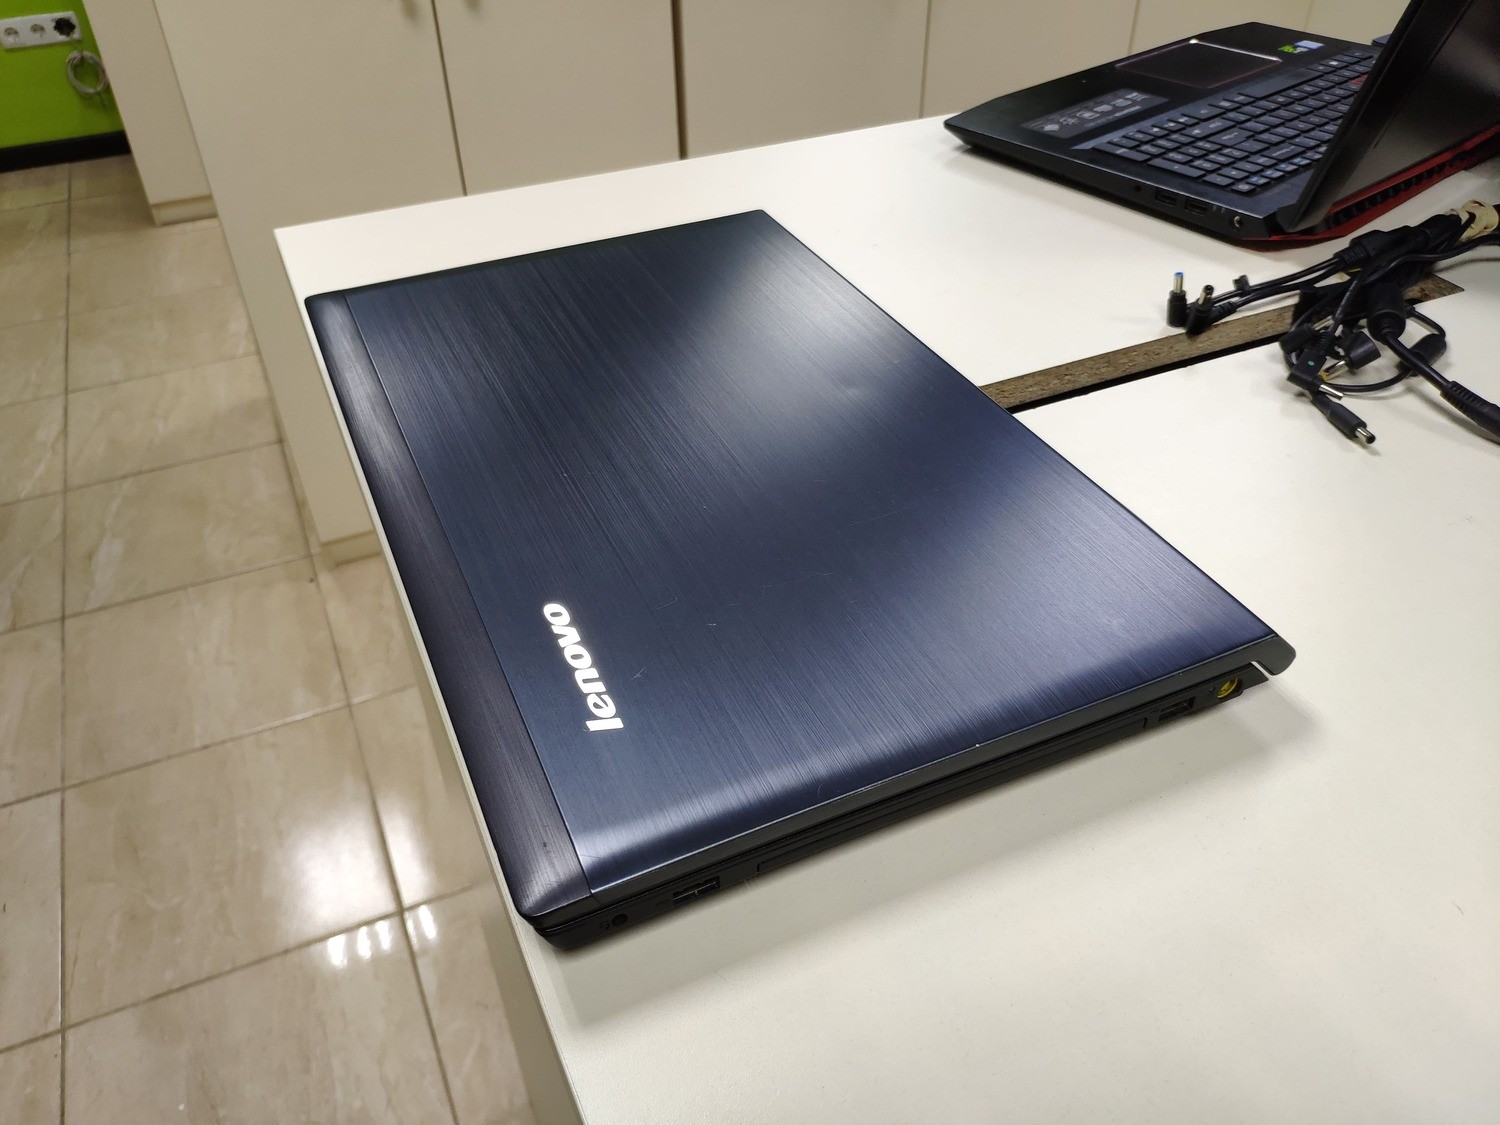 Купить Ноутбук Lenovo Ideapad V580c